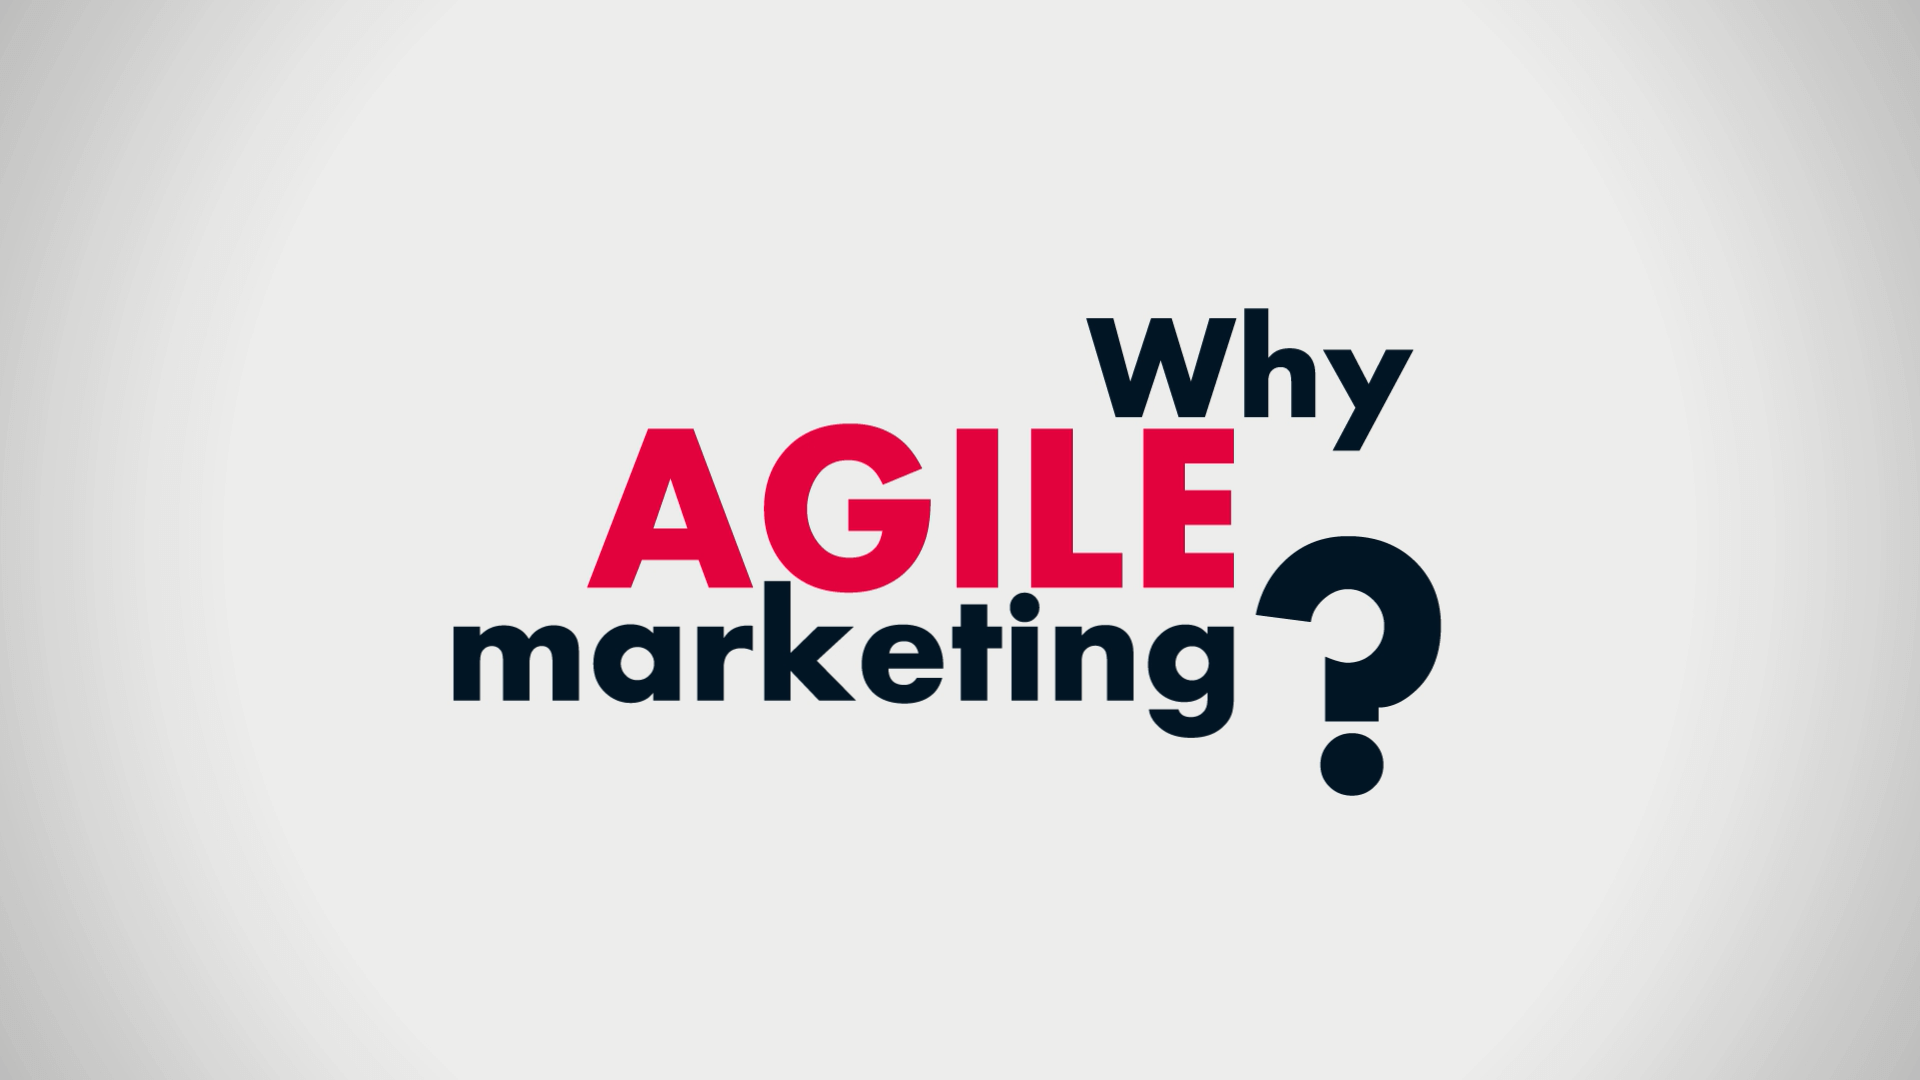 بازاریابی چابک (agile) چیست